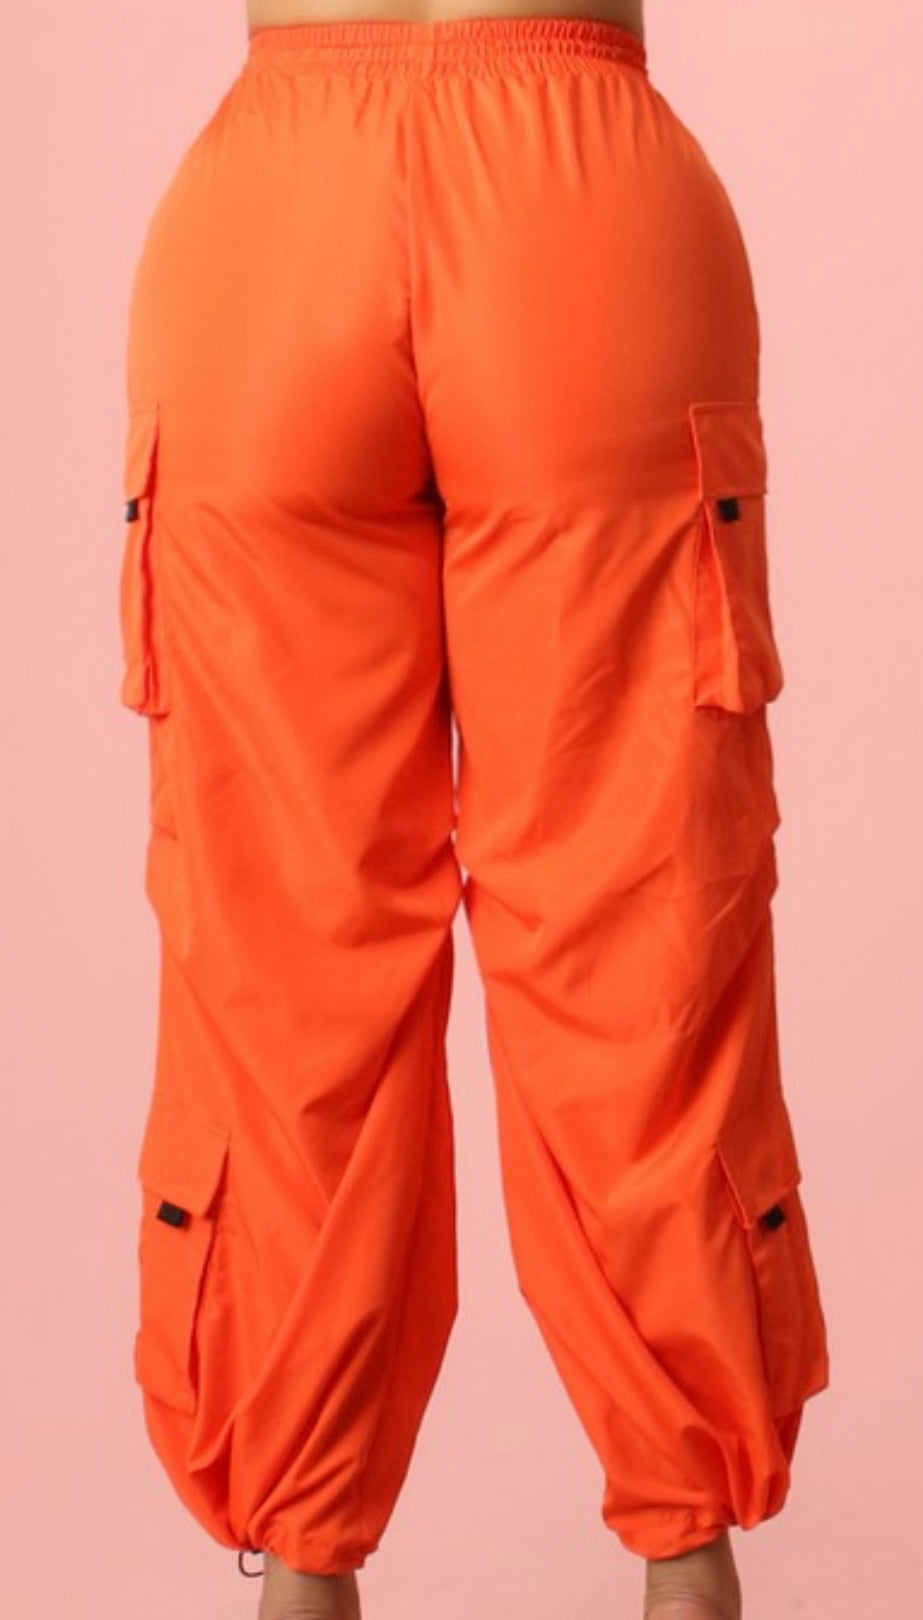 Tangerine Cargo pants